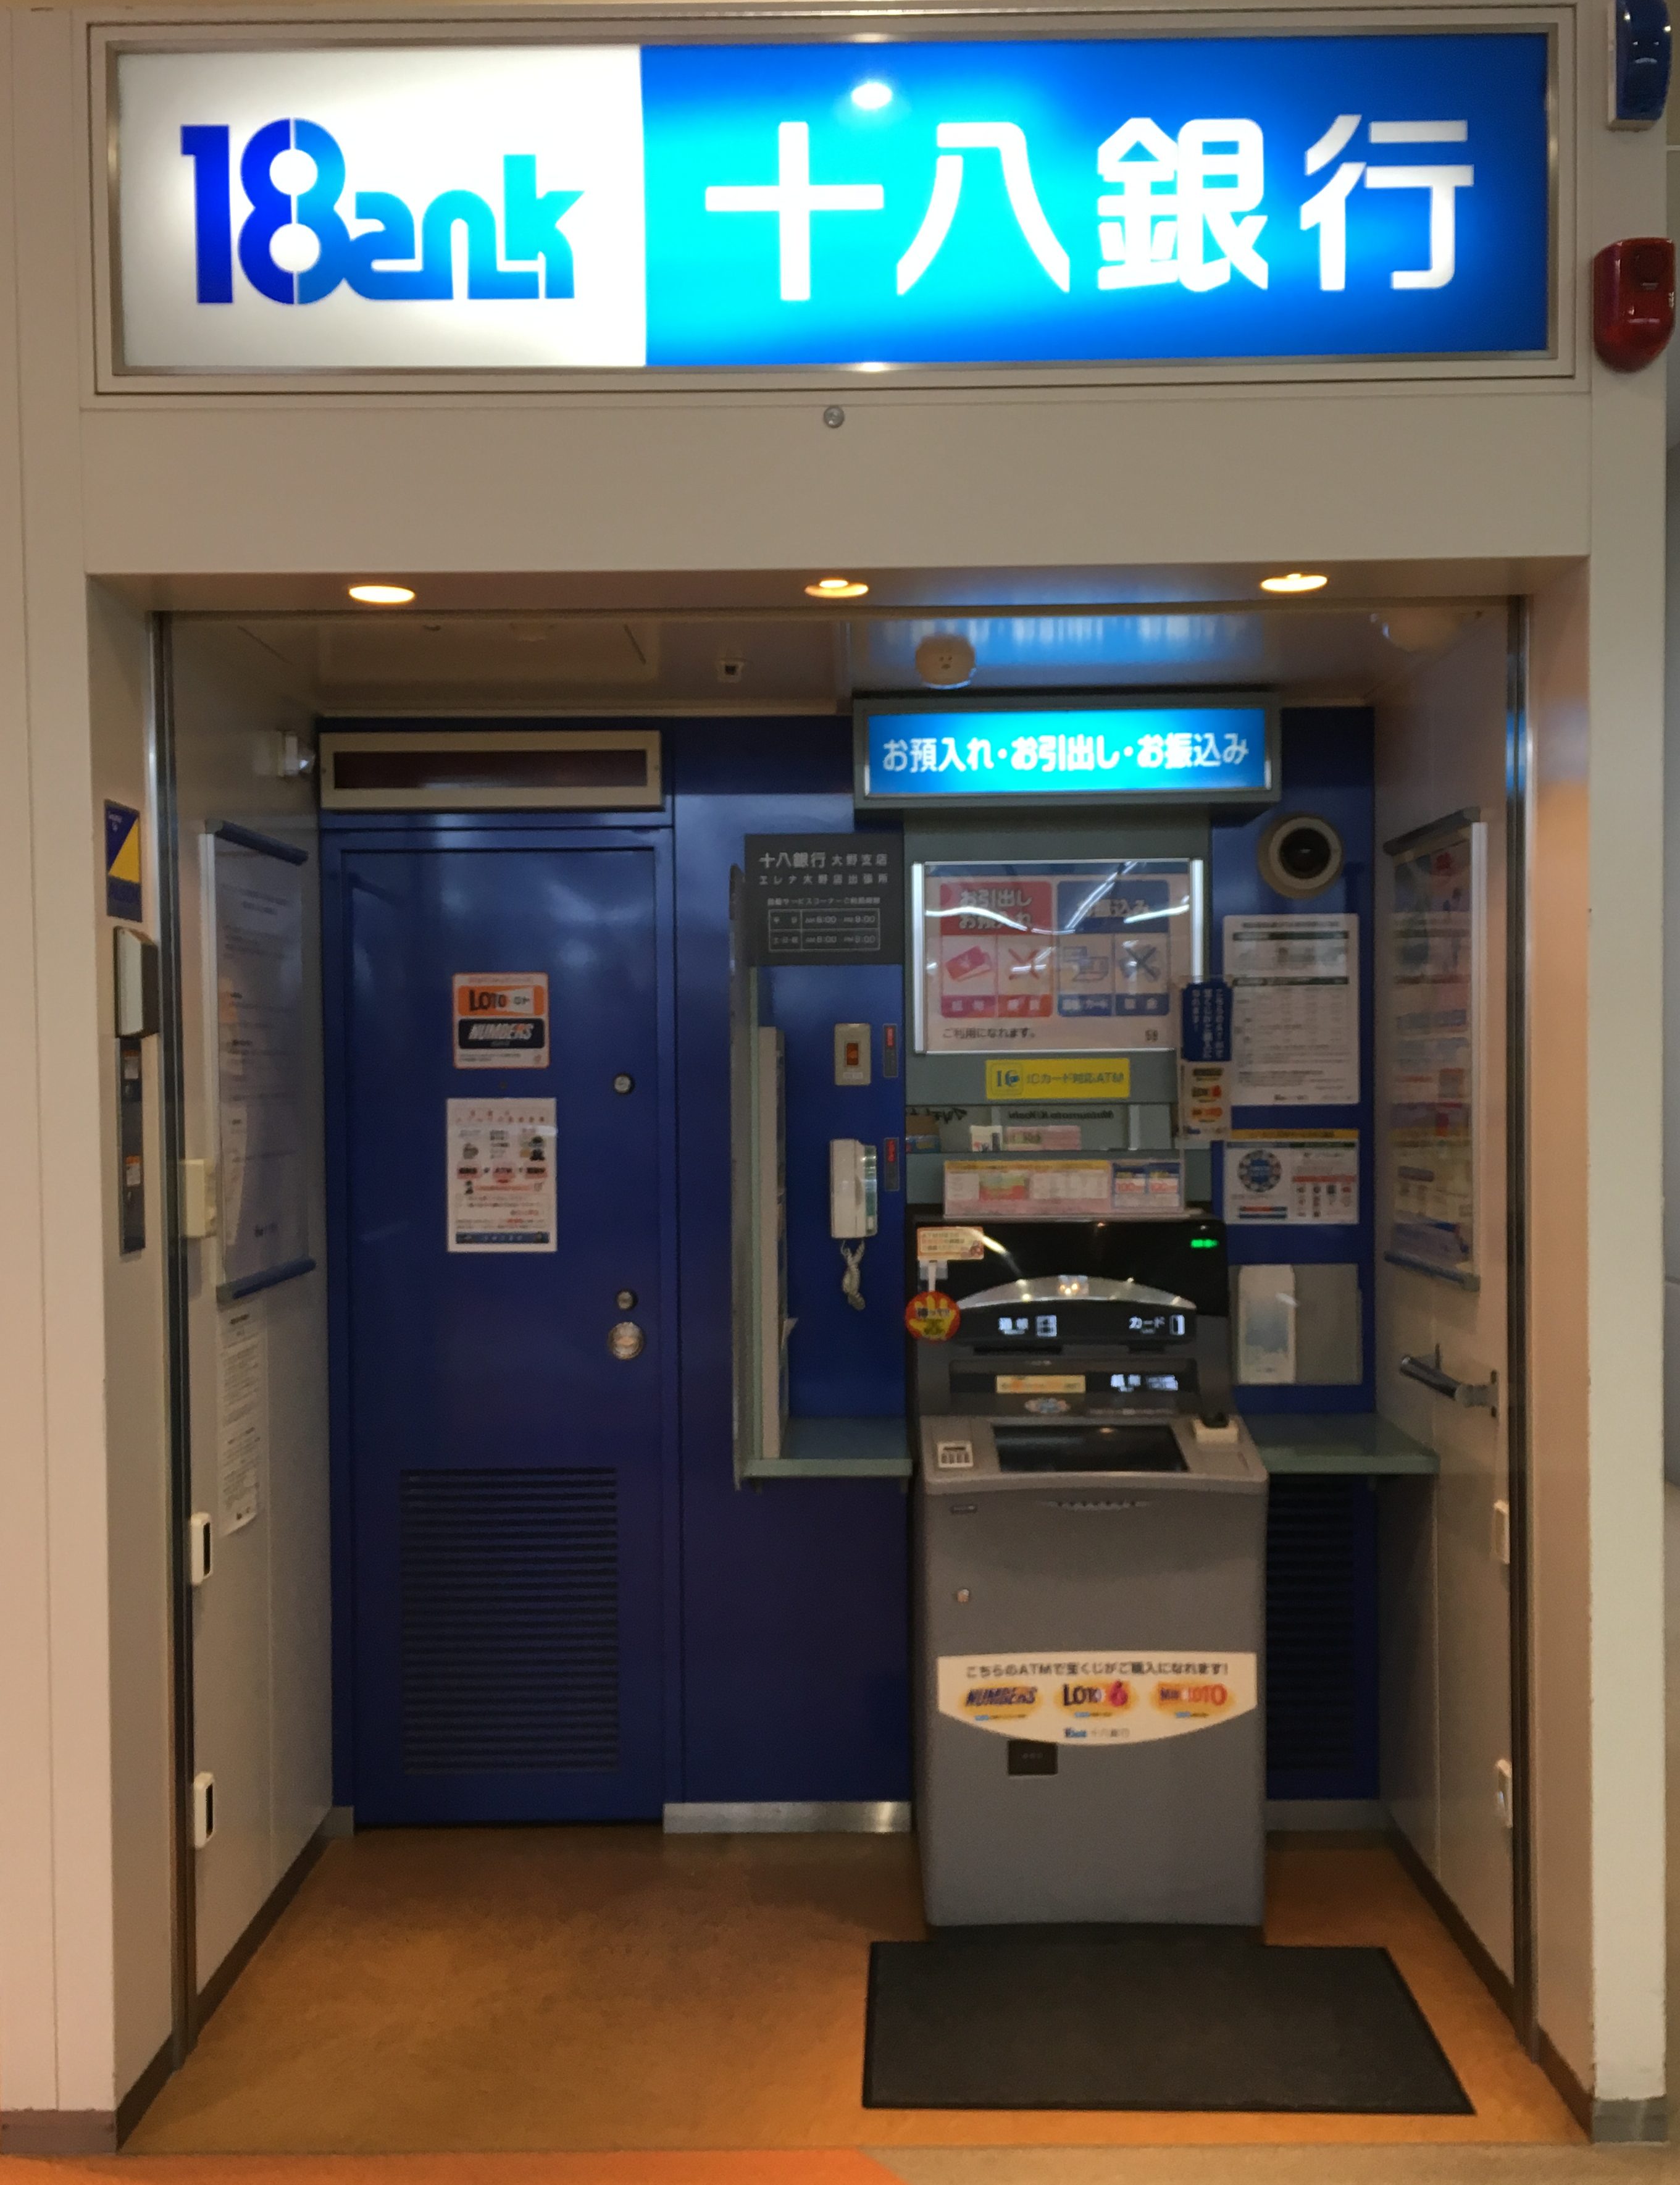 18銀行ATM